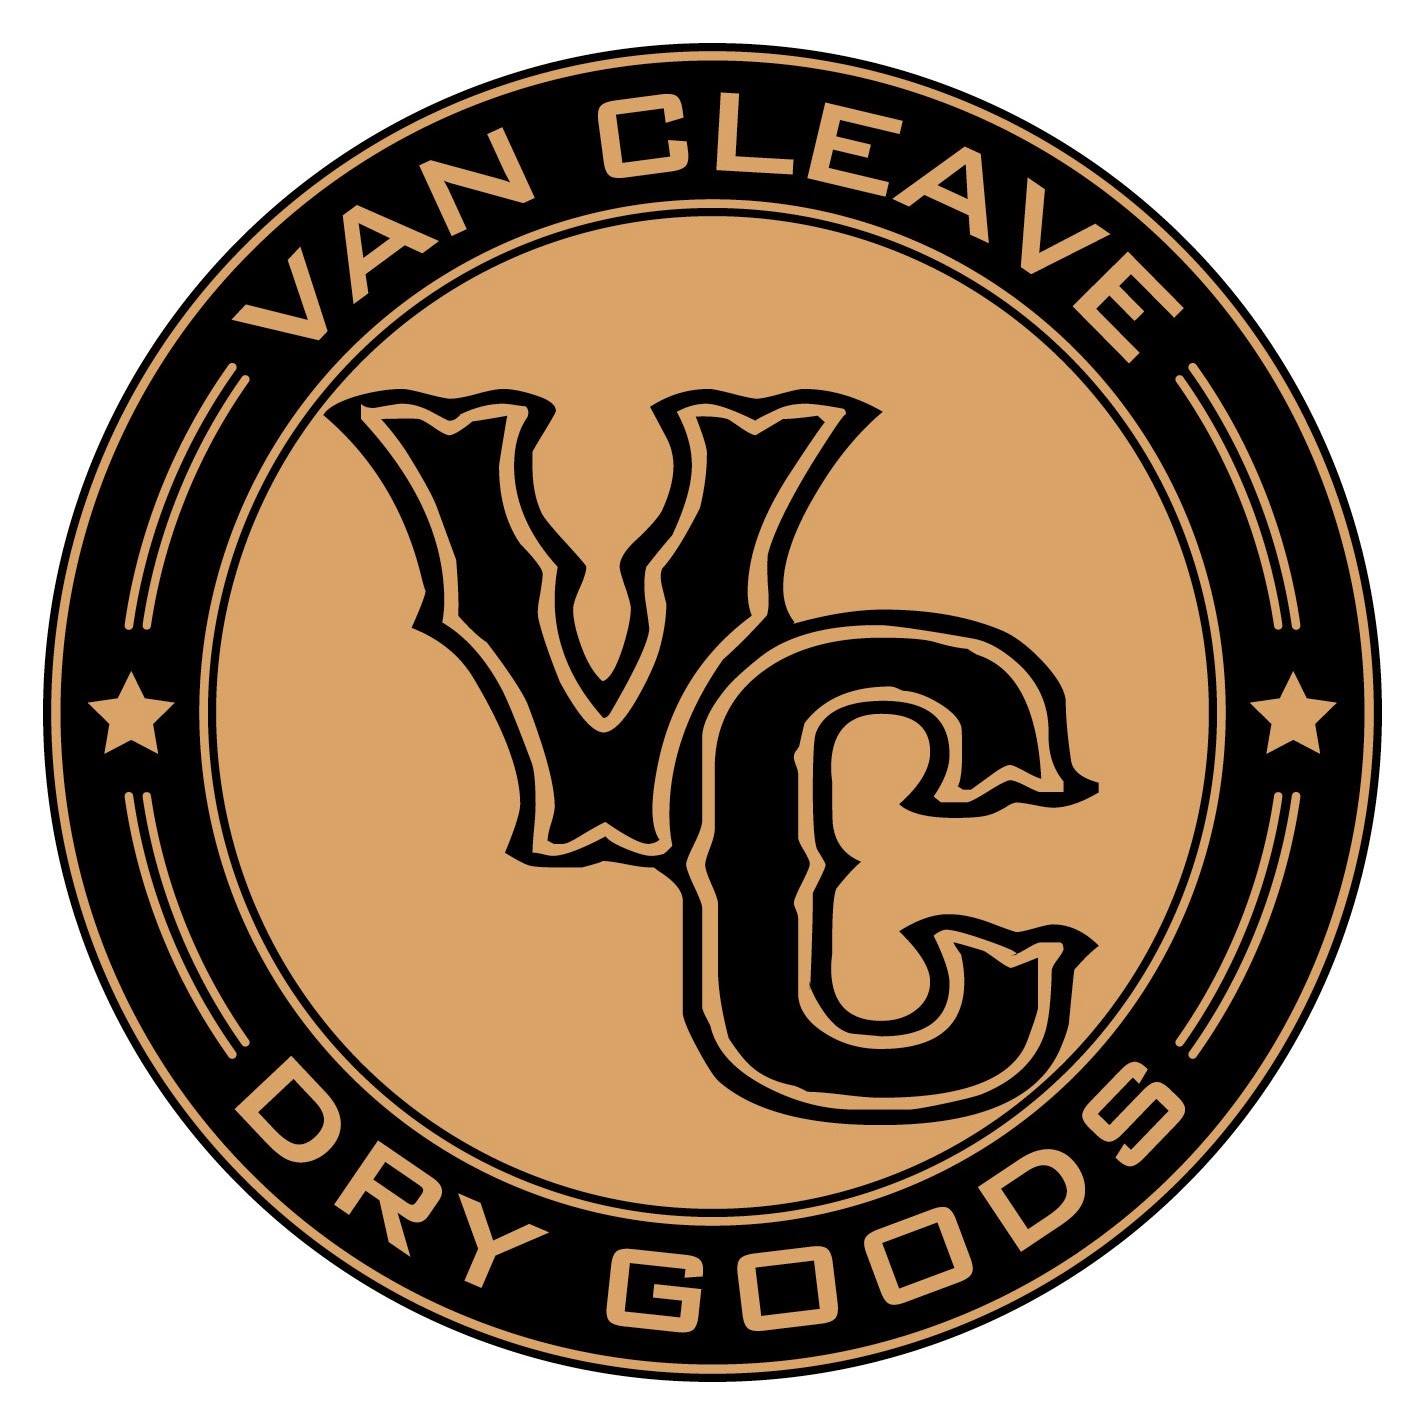 van cleave dry goods